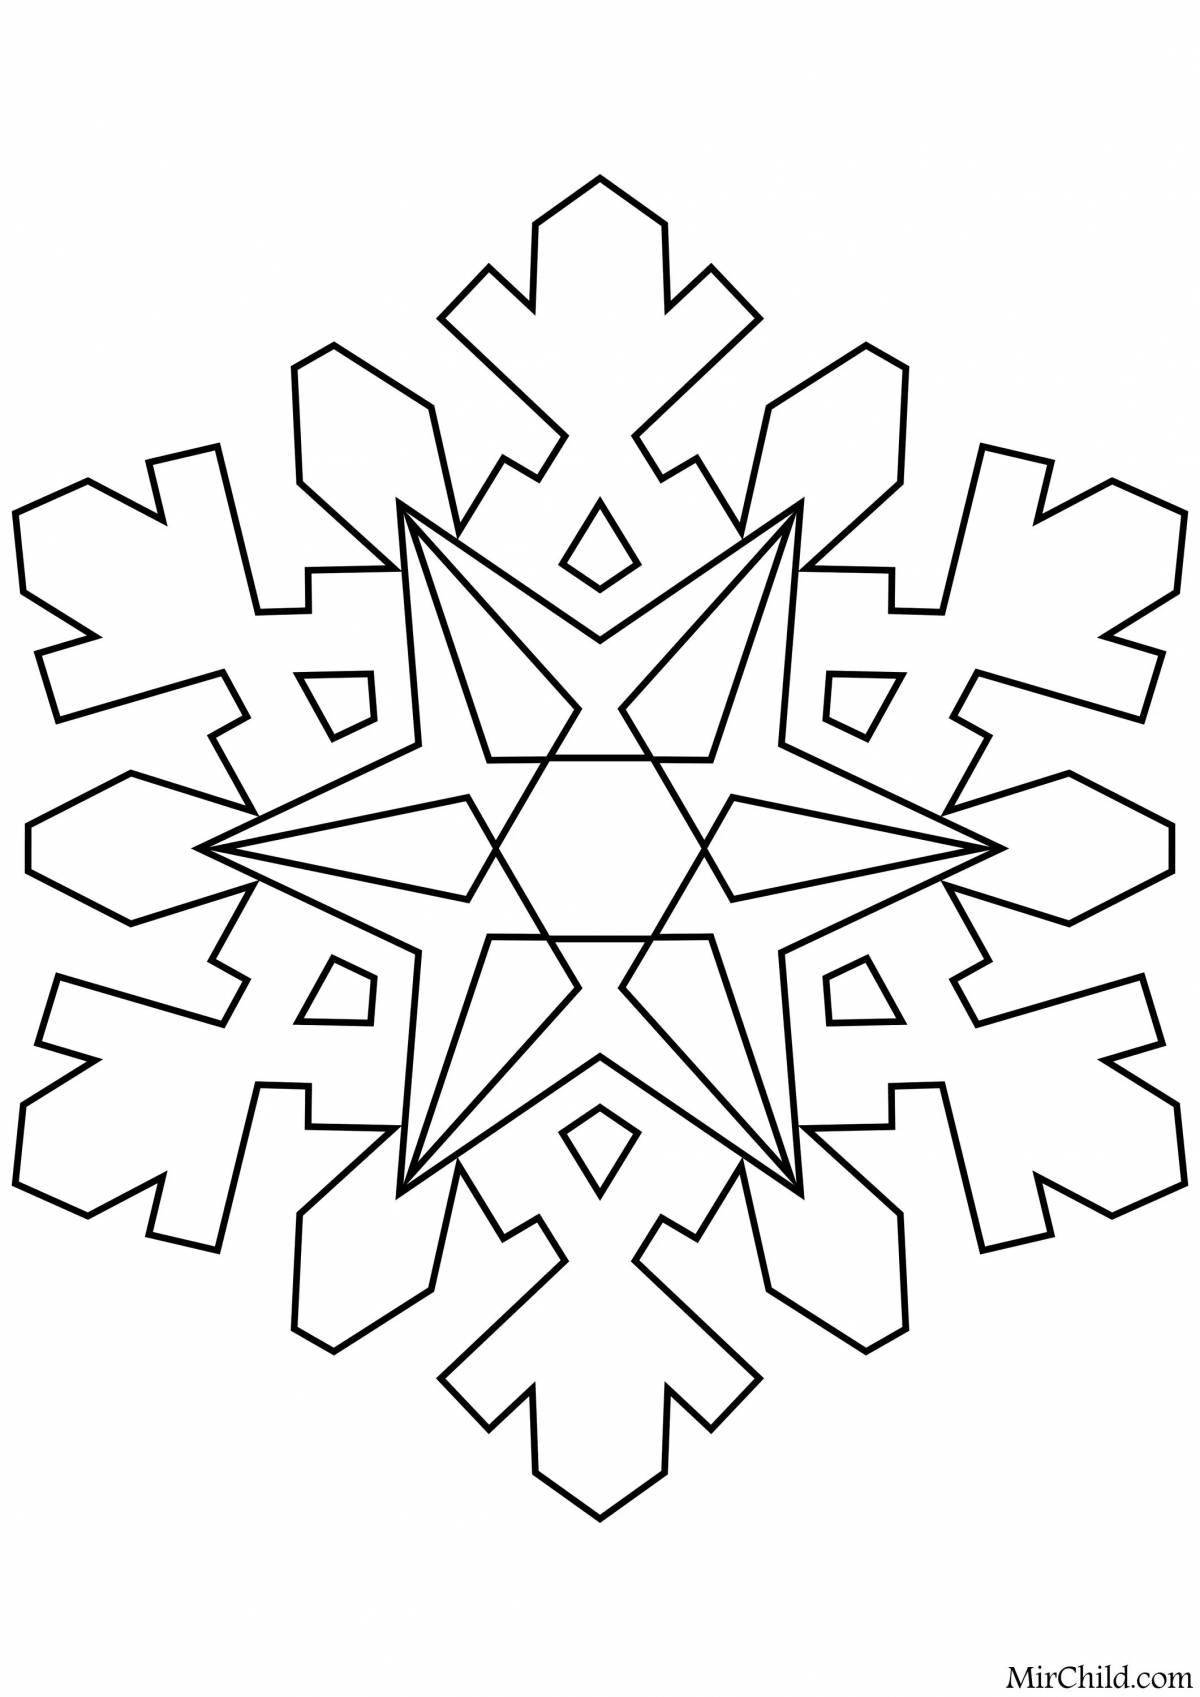 Coloring book elegant big snowflake